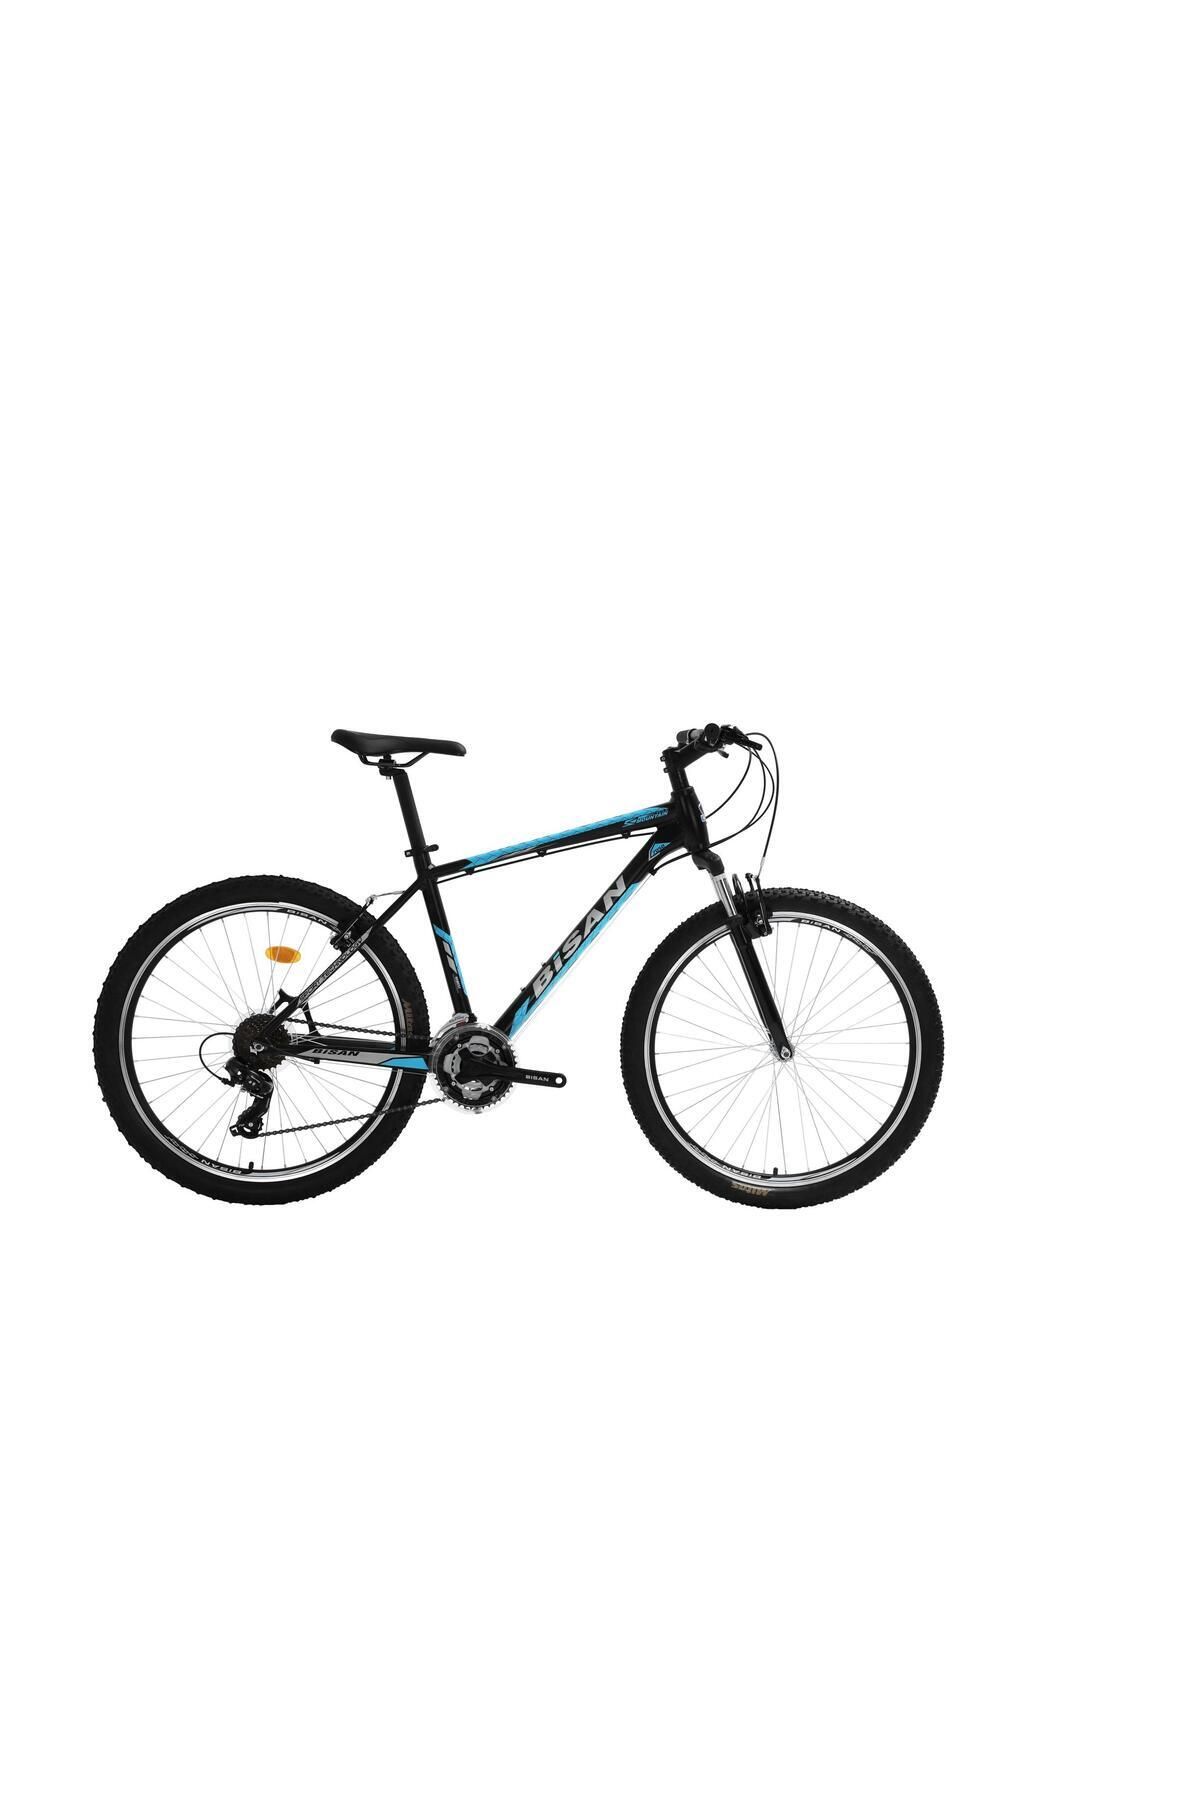 Bisan Mtx 7050 V Siyah/mavi 26 Jant 17"/43cm 21 Vites Dağ Bisikleti